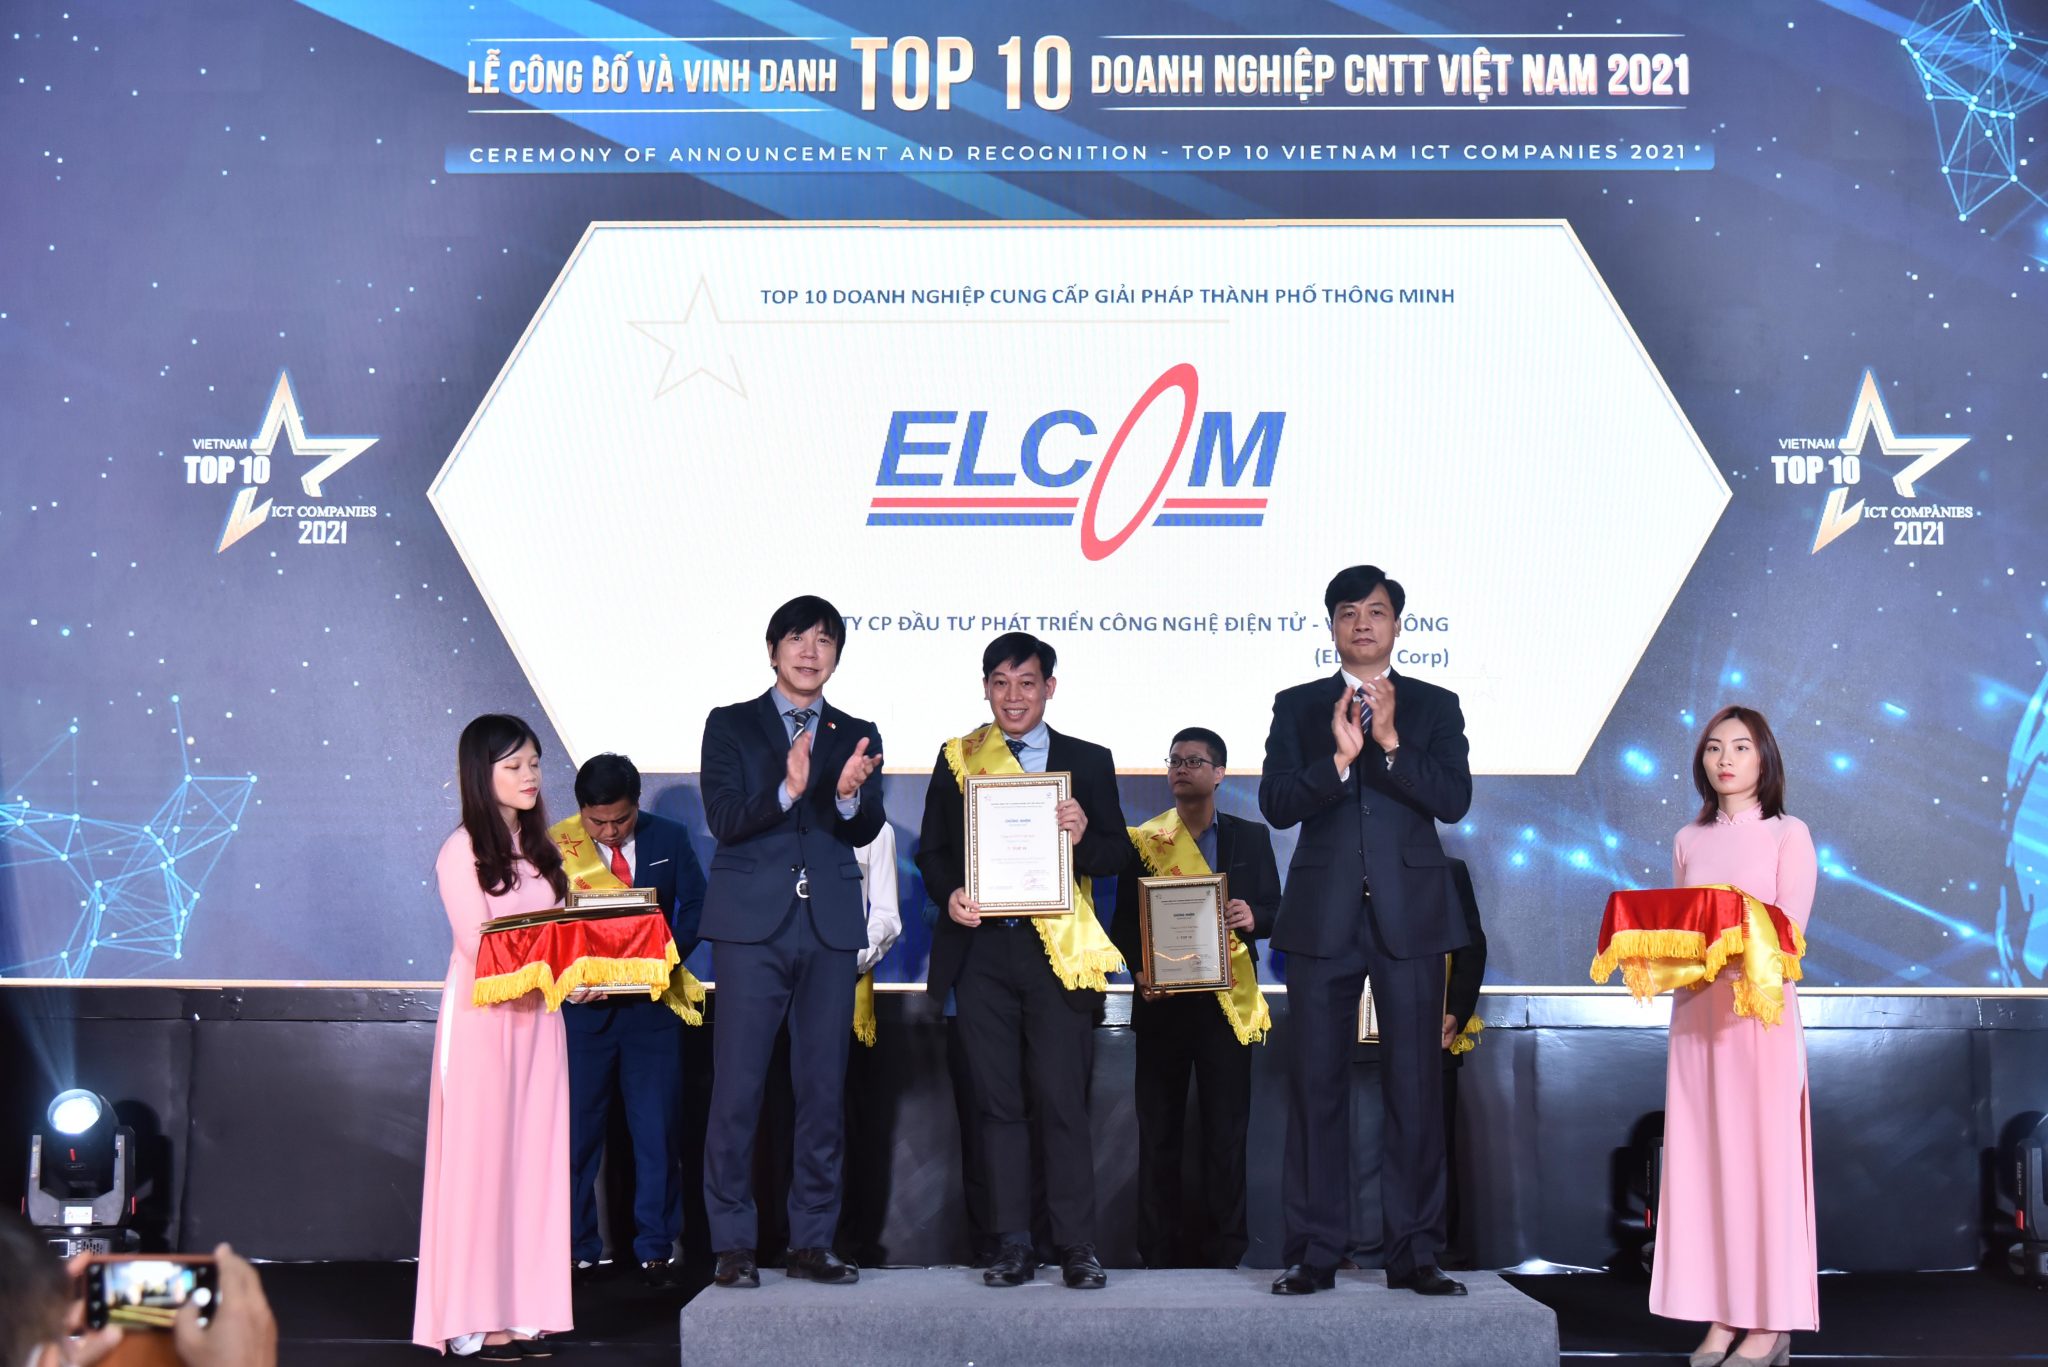 ELCOM xuất sắc nhận cú đúp giải thưởng Top 10 doanh nghiệp CNTT Việt Nam 2021